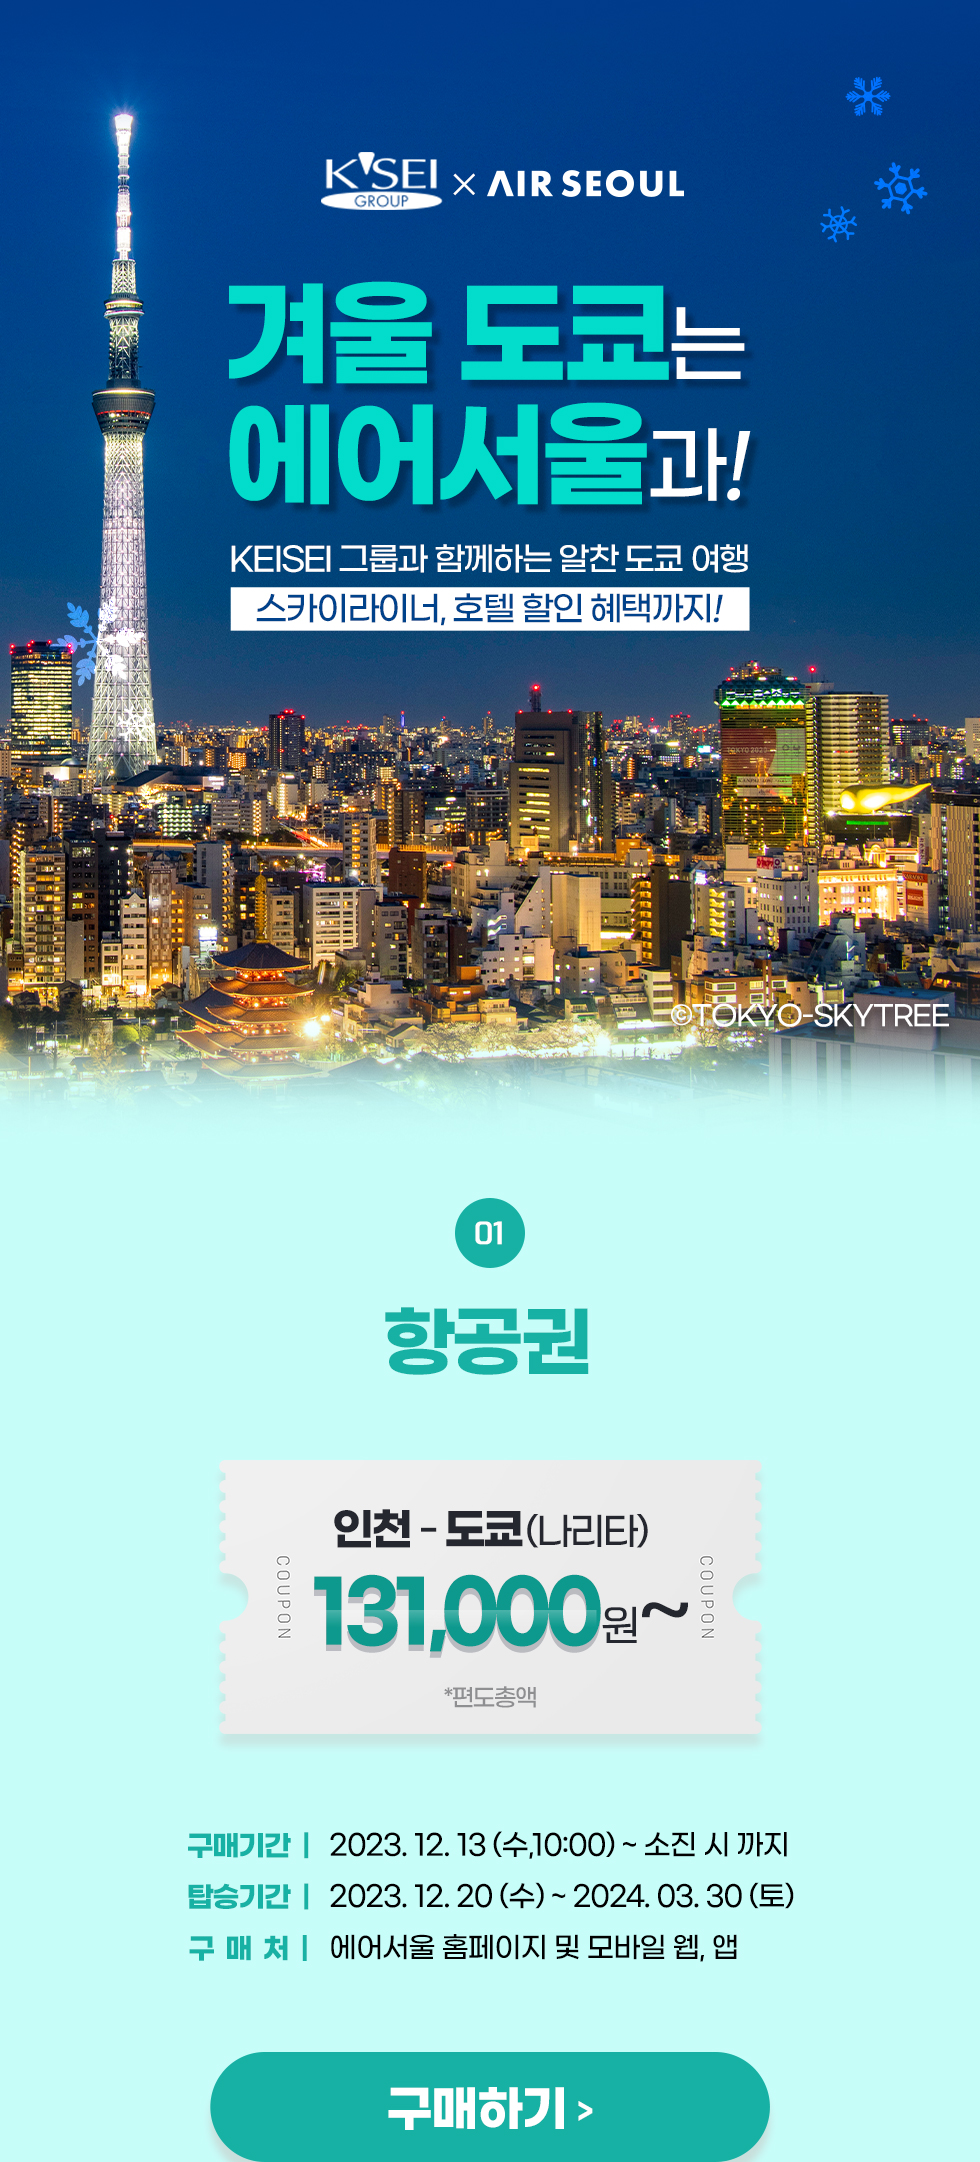 img01.jpg : 에어서울 인천~도쿄 할인항공권 및 스카이라이너 할인혜택